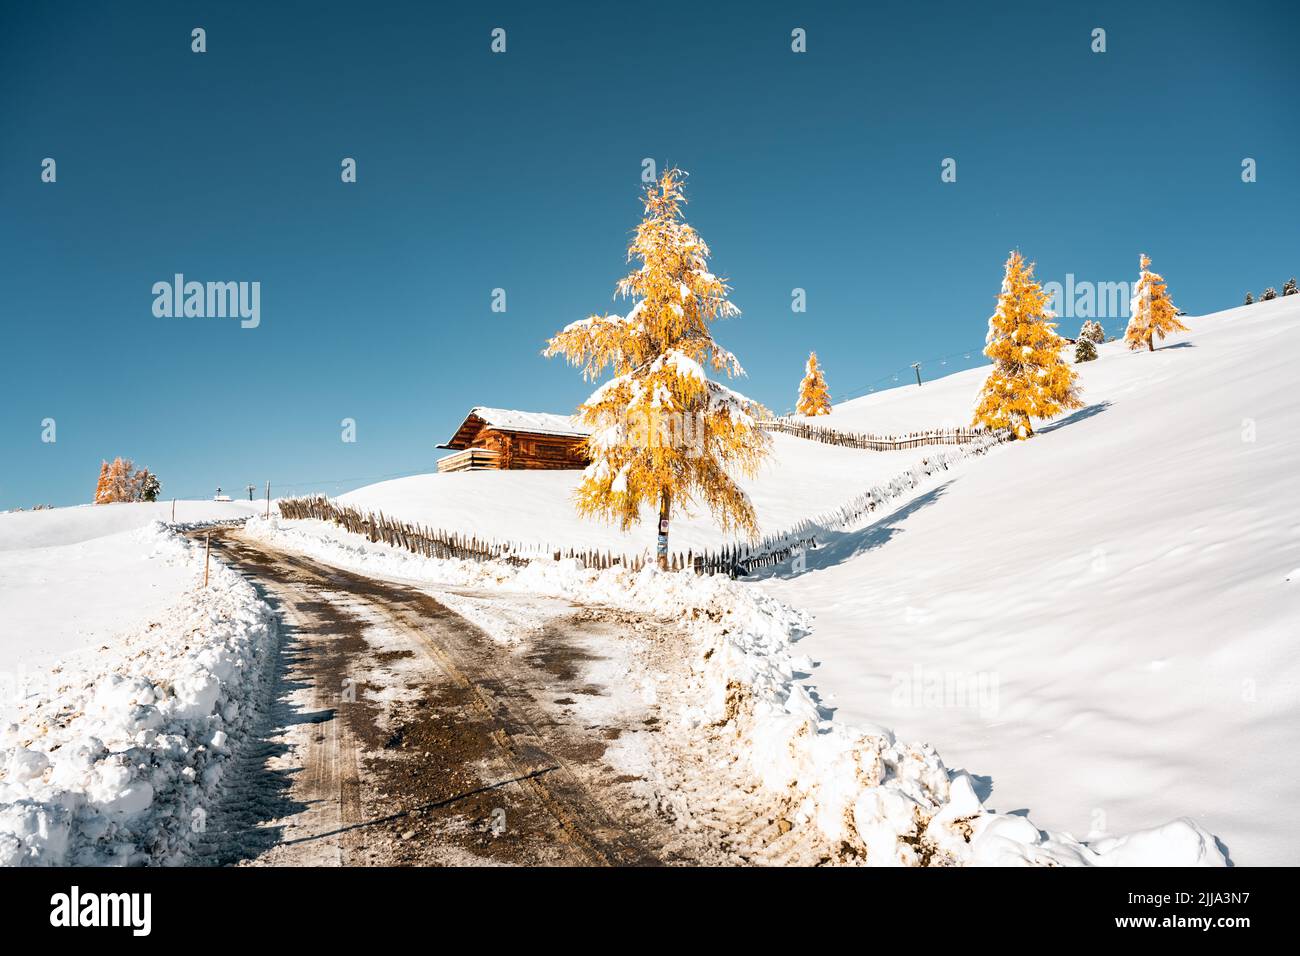 Paesaggio pittoresco con piccola capanna in legno sul prato Alpe di Siusi all'alba. Alpe di Siusi, Dolomiti, Italia. Collina innevata con strada e larchi arancioni Foto Stock